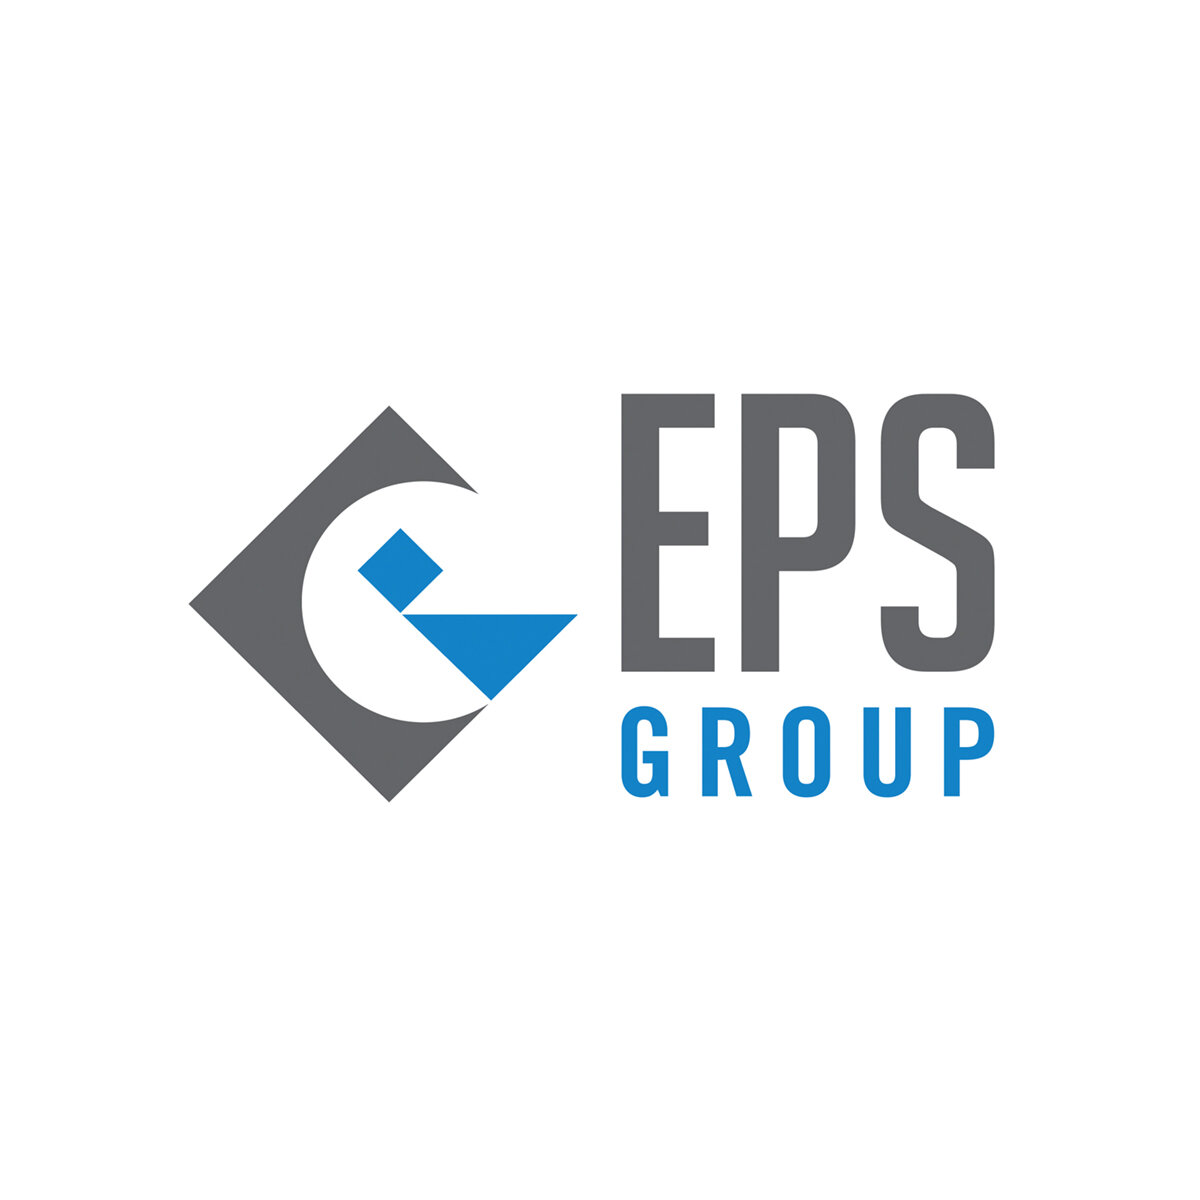 EPS Group logo.jpg